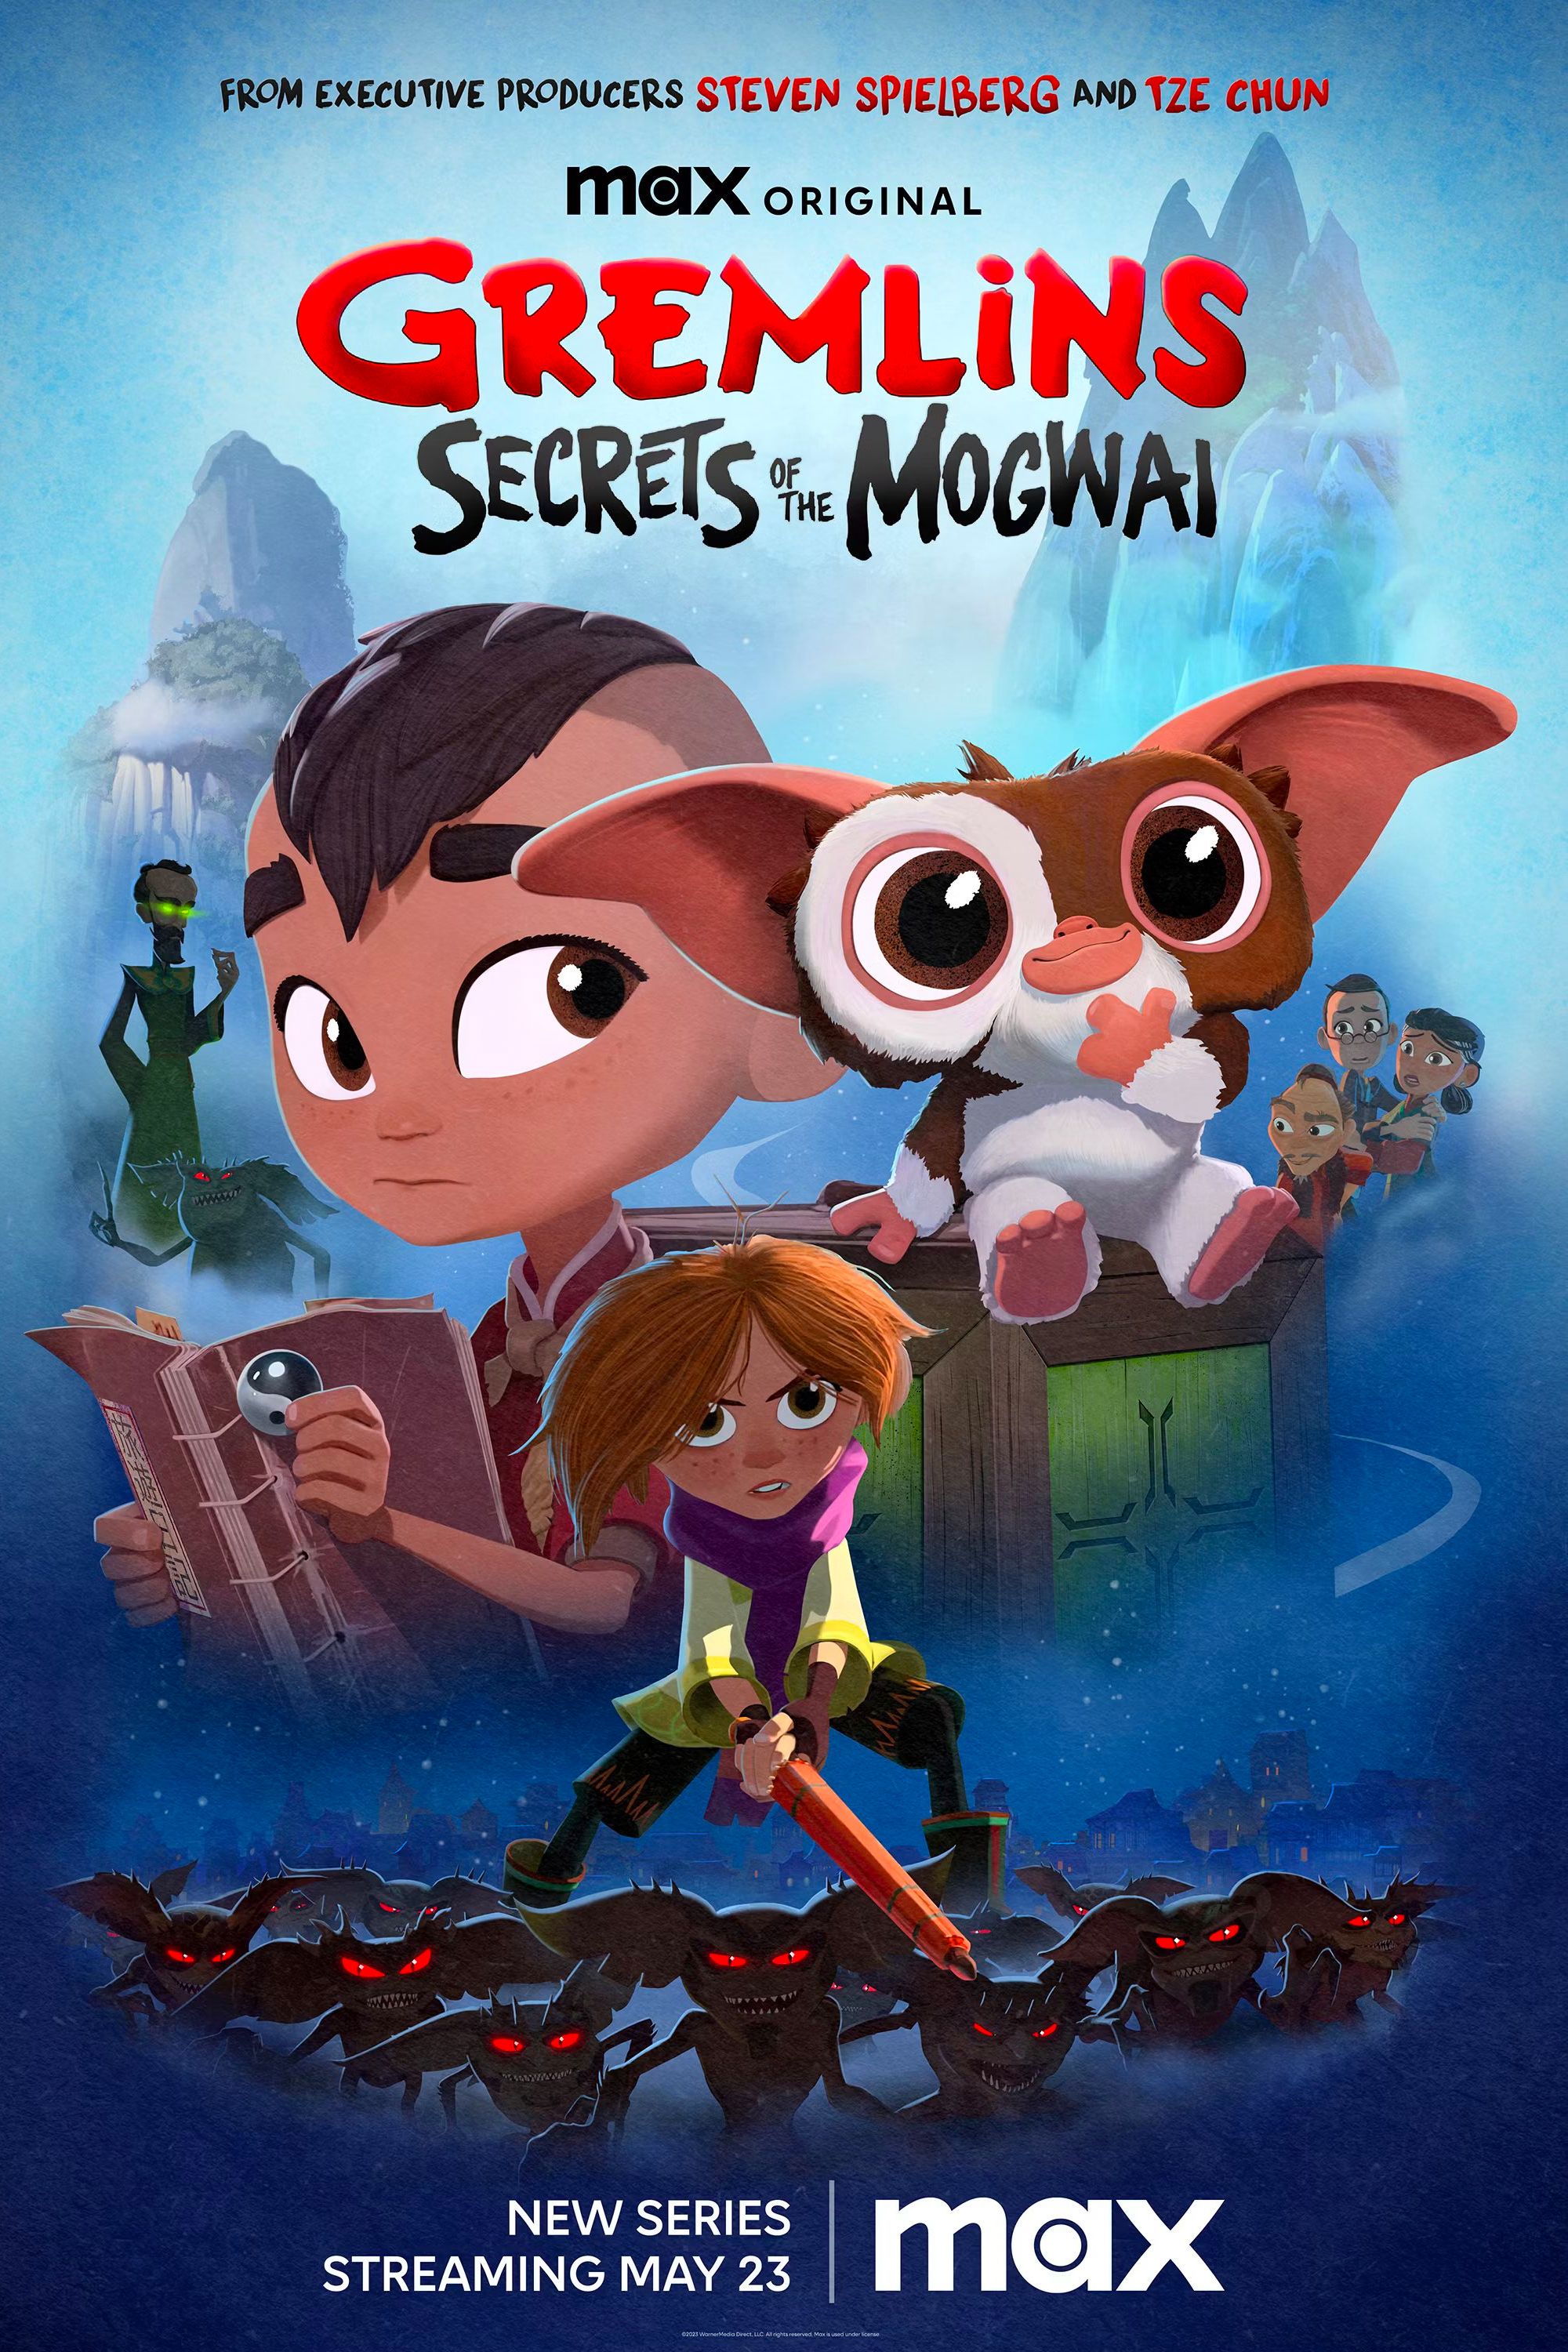 Gremlins Secrets of the Mogwai Poster